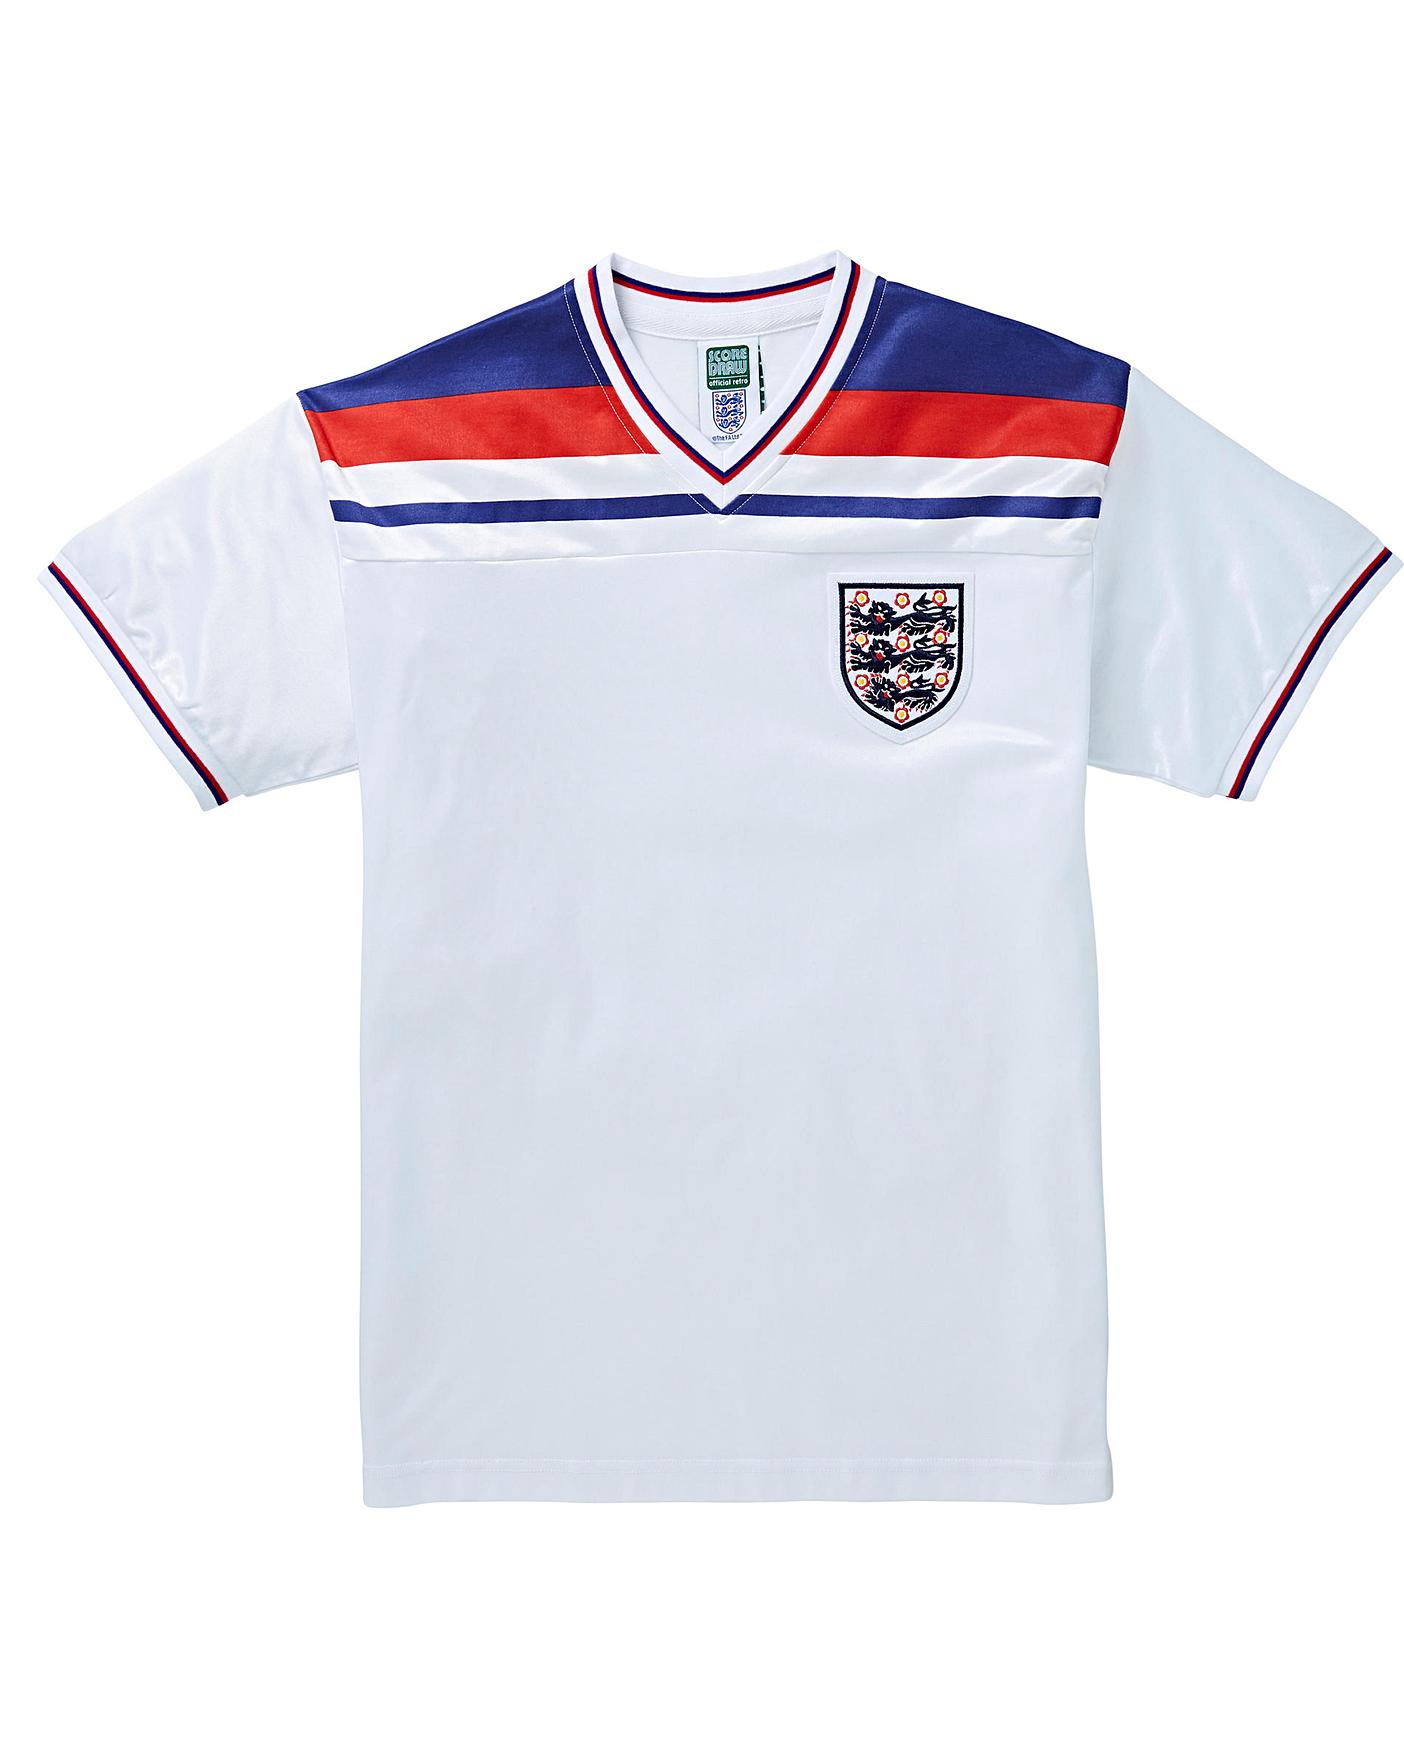 England 1982 Retro Football Shirt 